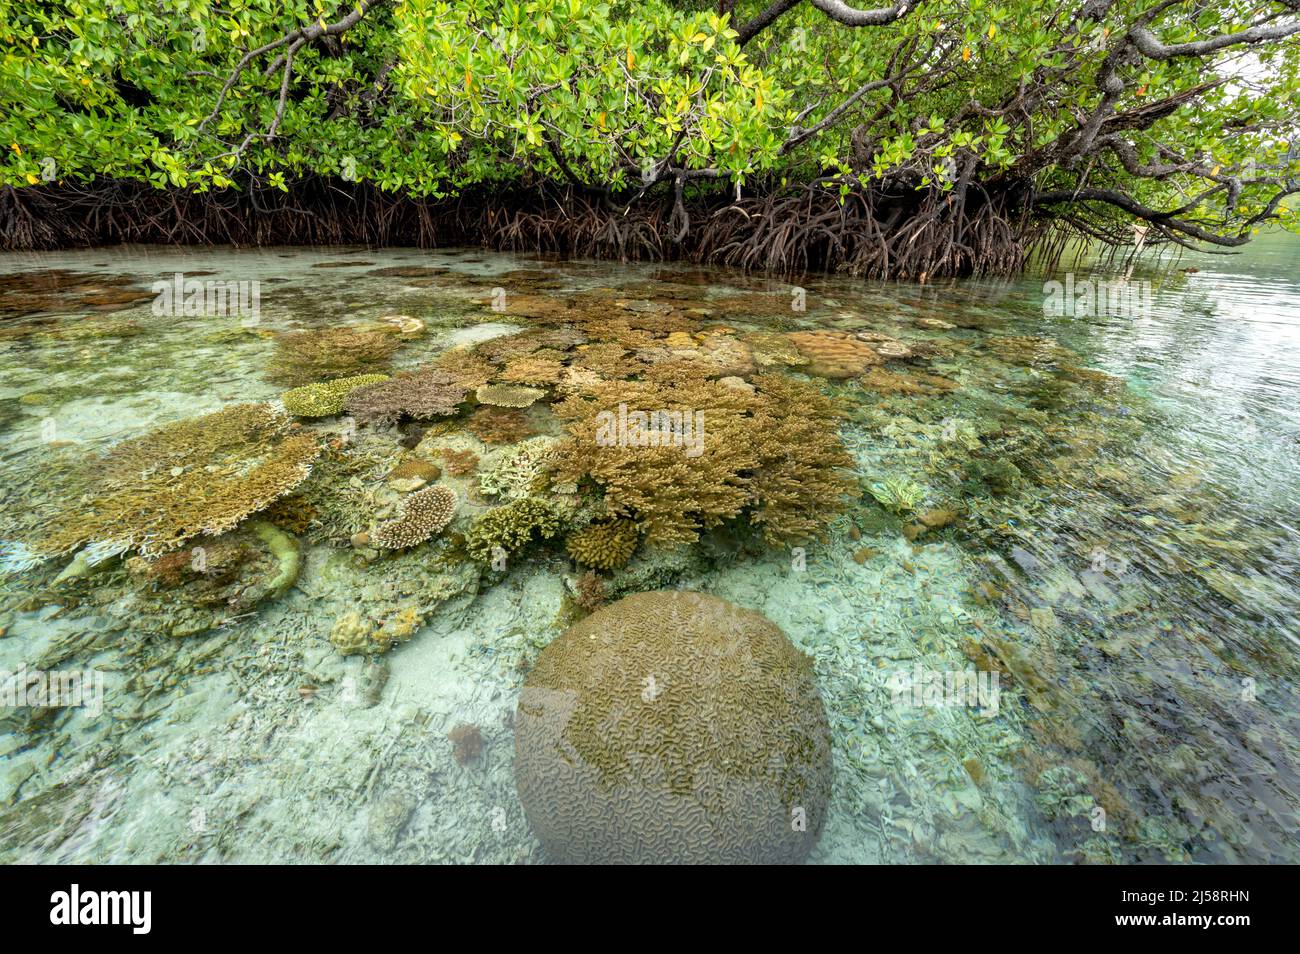 Coraux en croissance près de la forêt de mangroves, Raja Ampat Indonésie. Banque D'Images